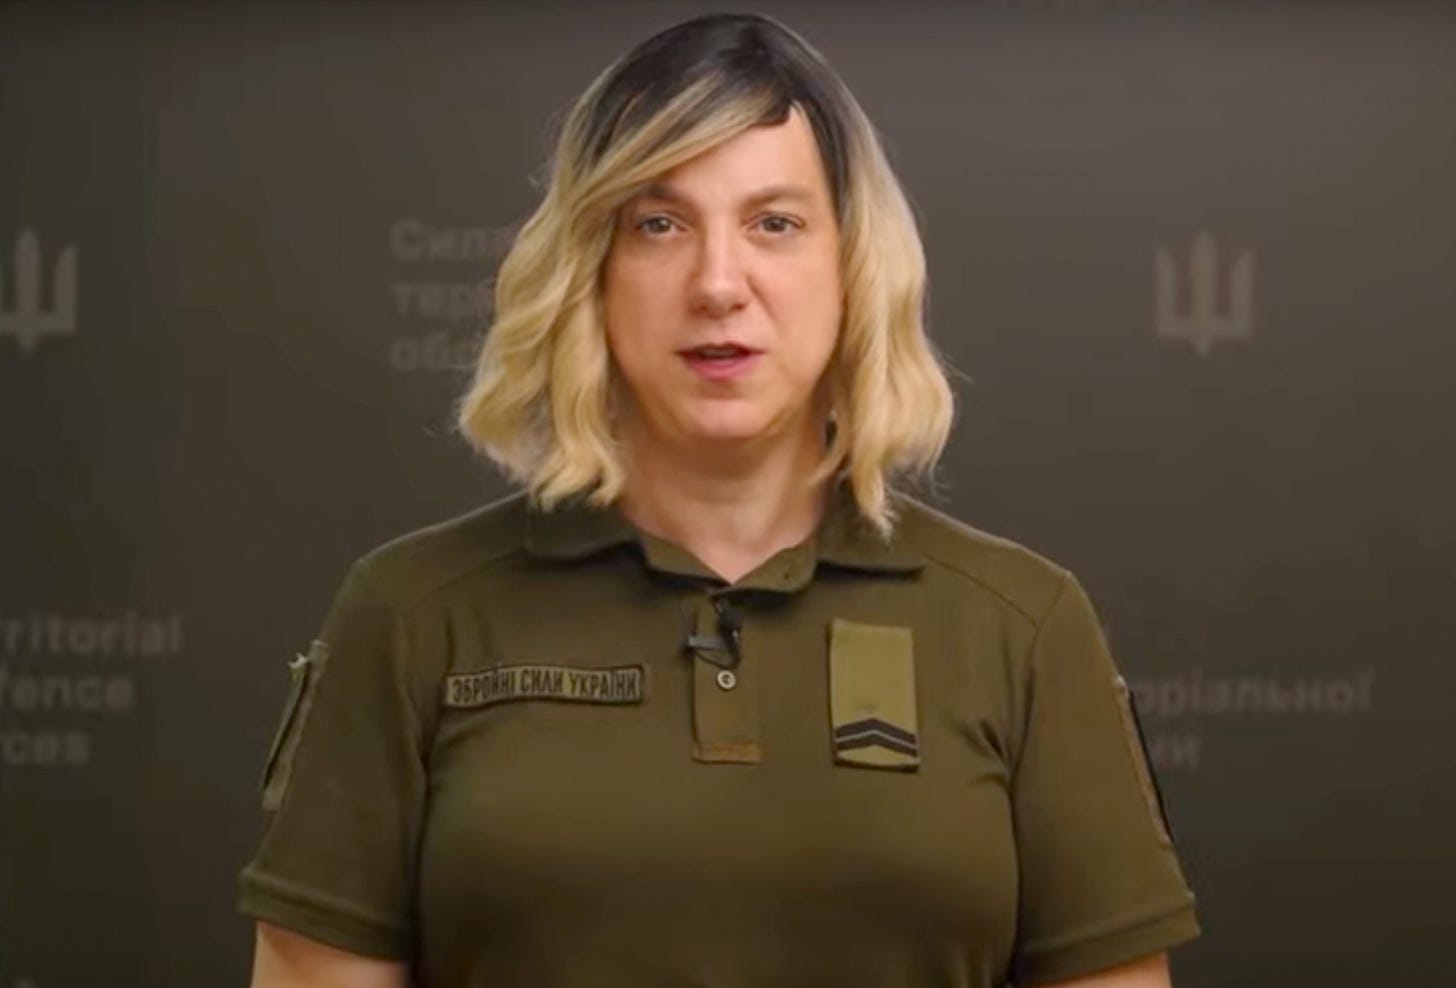 Ukraine military has a new transgender spokesperson